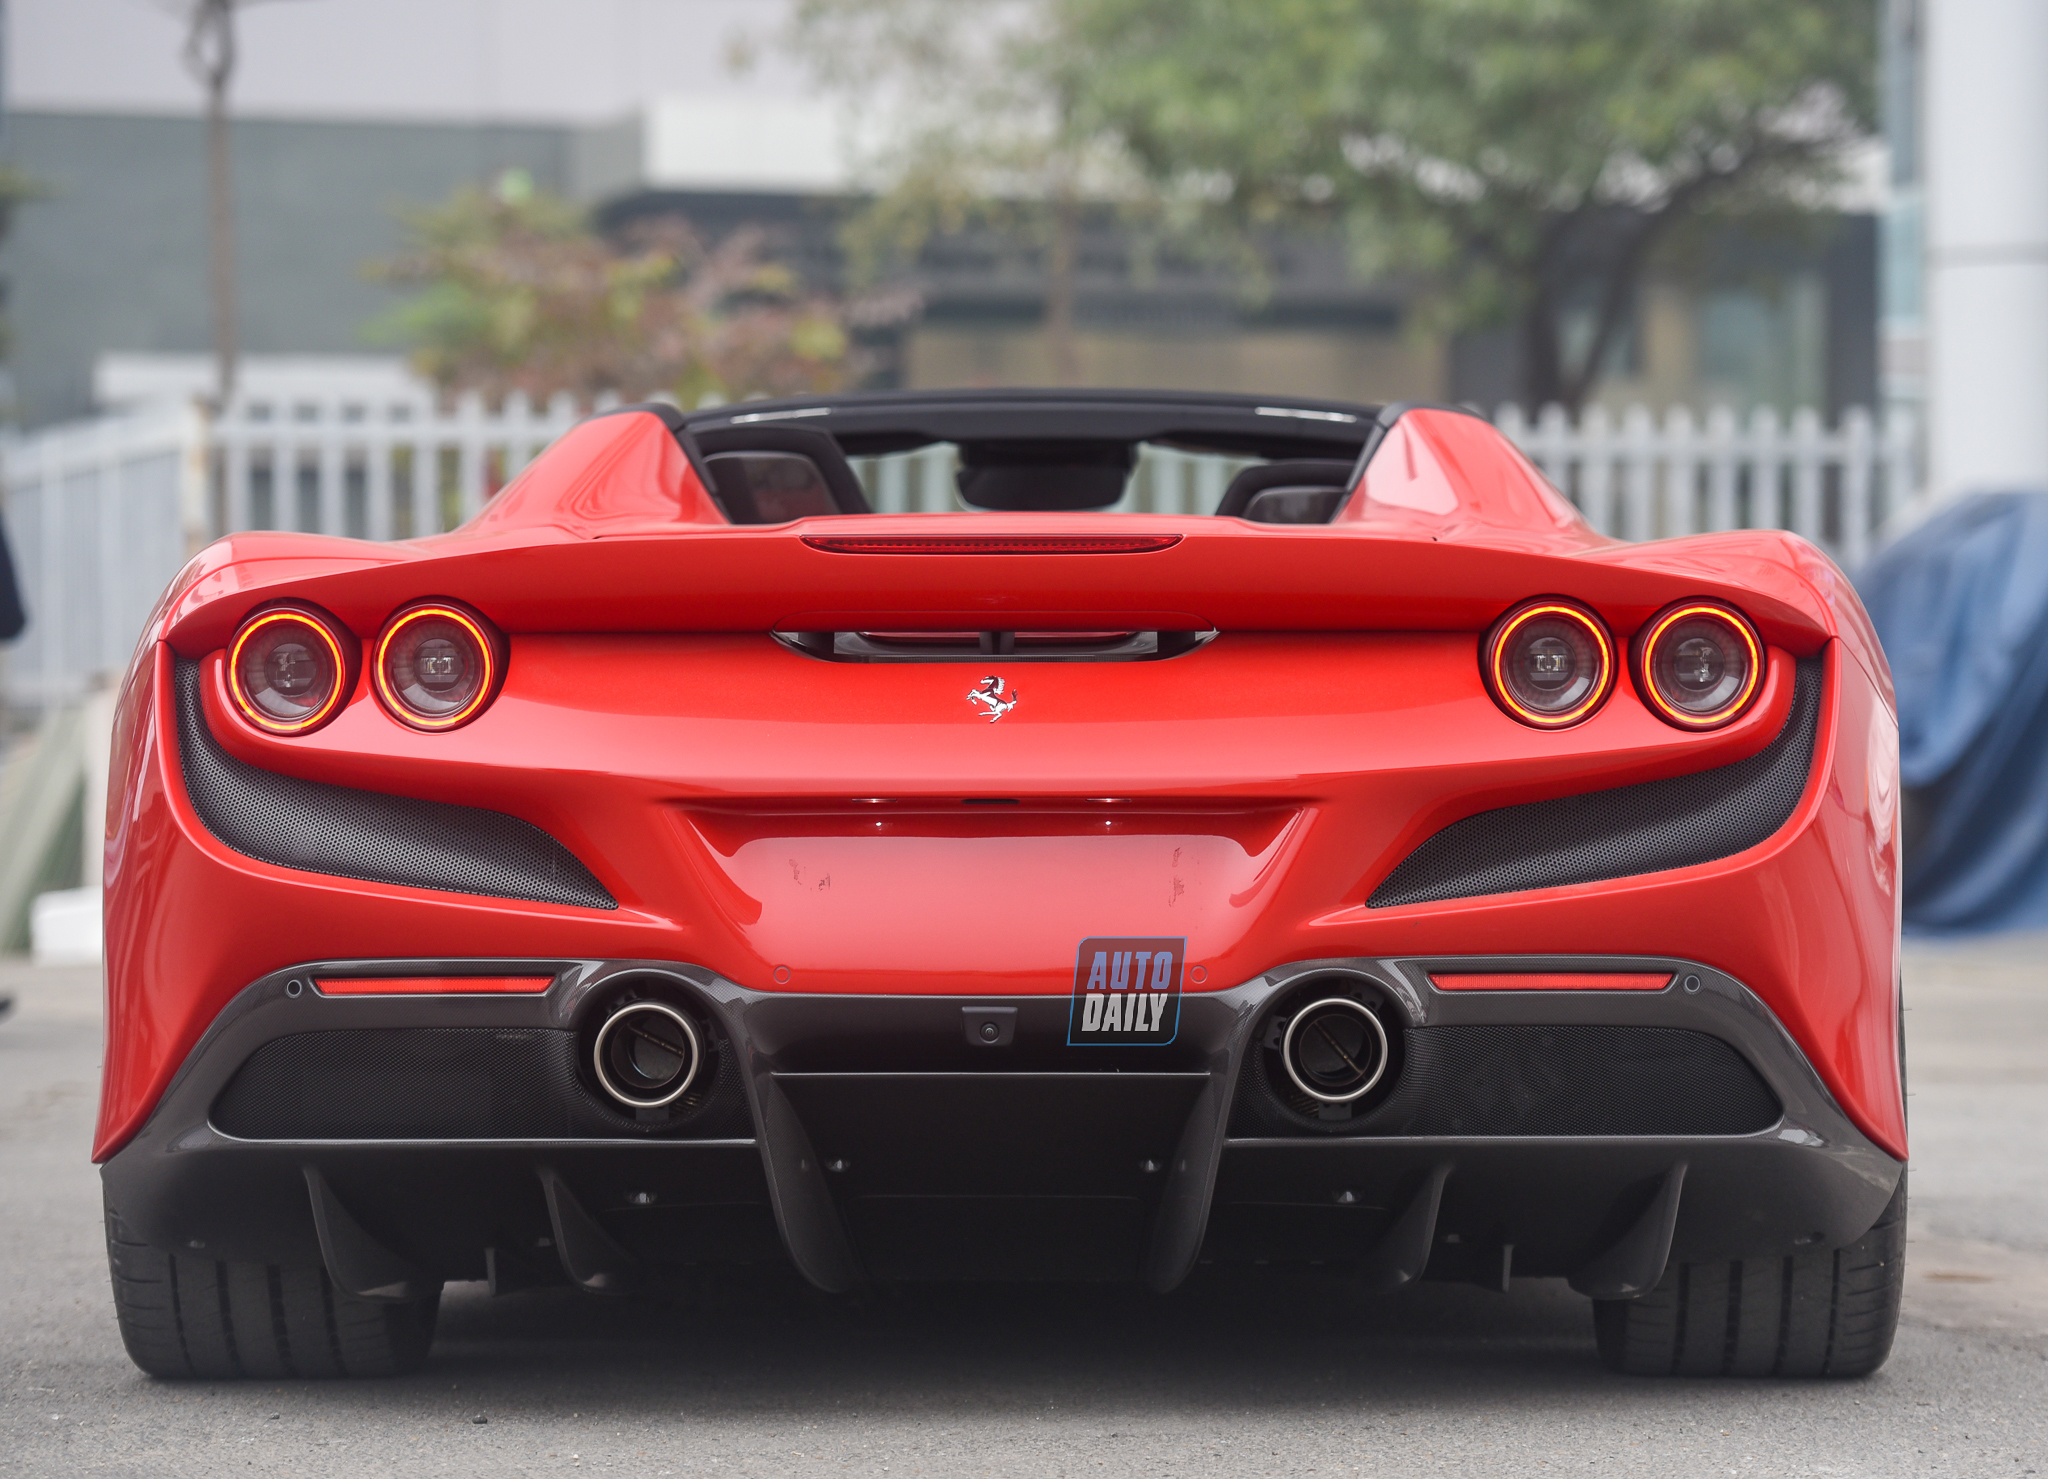 Chi tiết siêu xe Ferrari F8 Spider giá hơn 1 triệu USD tại Việt Nam 11.jpg